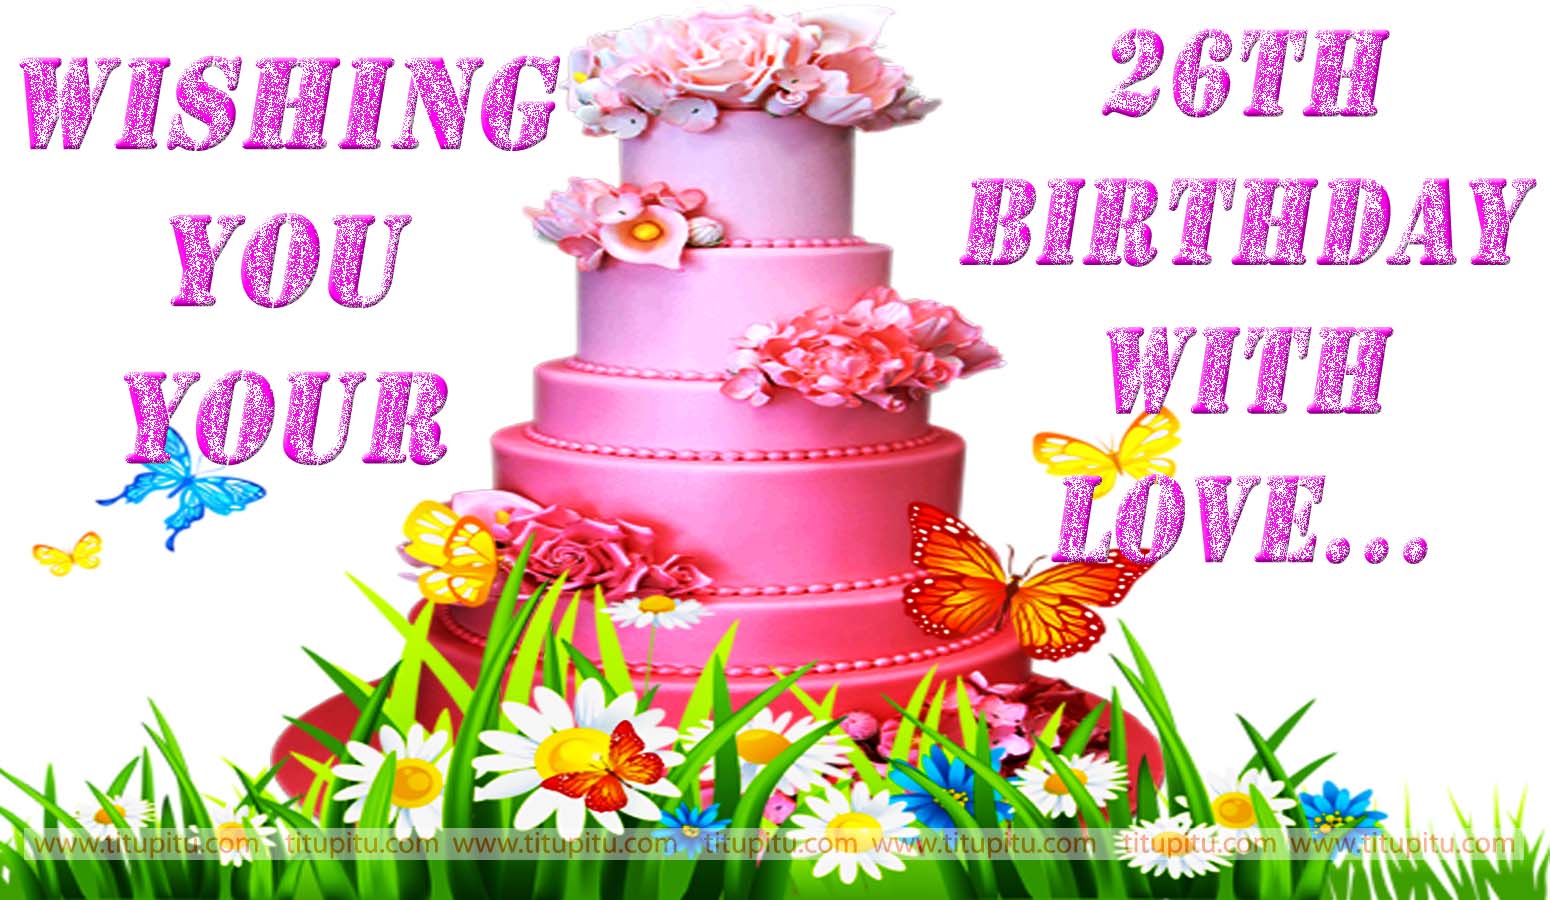 carta da parati di compleanno con virgolette,decorazione di torte,pasta di zucchero,fornitura decorazione di una torta,torta,glassatura